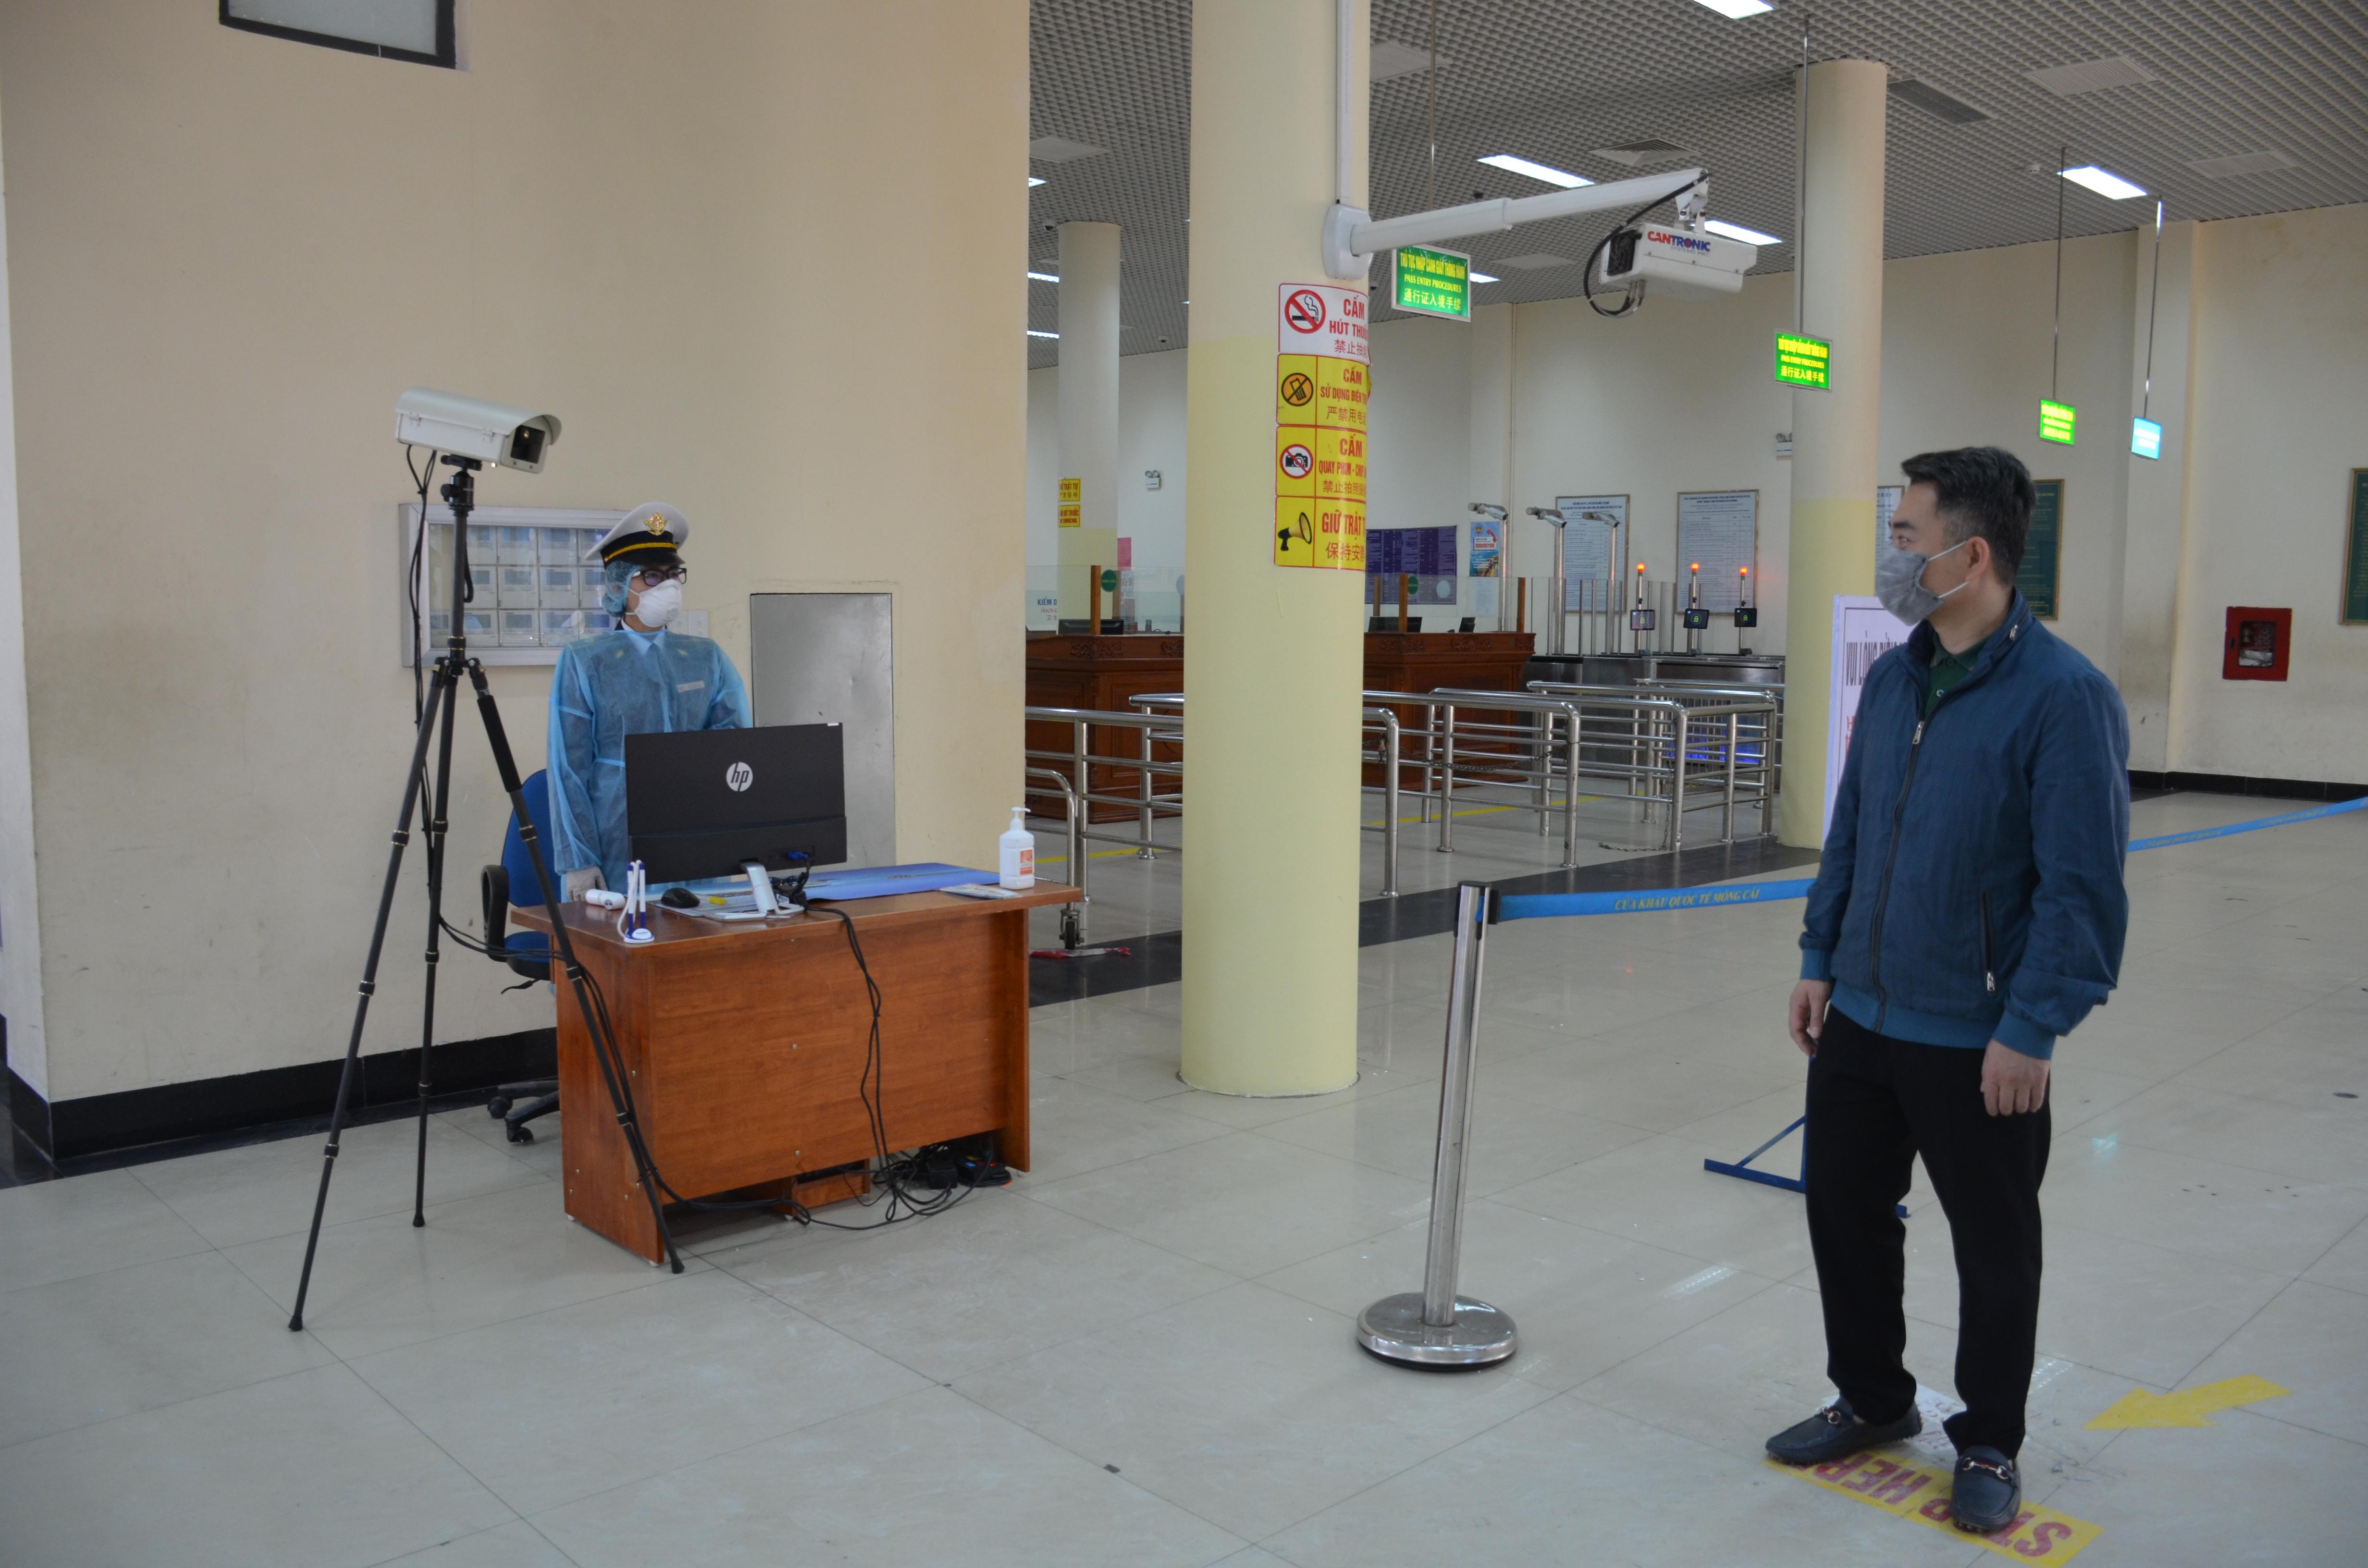 TP Móng Cái lắp máy đo thân nhiệt tại khu vực cửa khẩu nhằm kiểm soát, phòng chống dịch bệnh Covid-19. Ảnh: Nguyễn Hoa